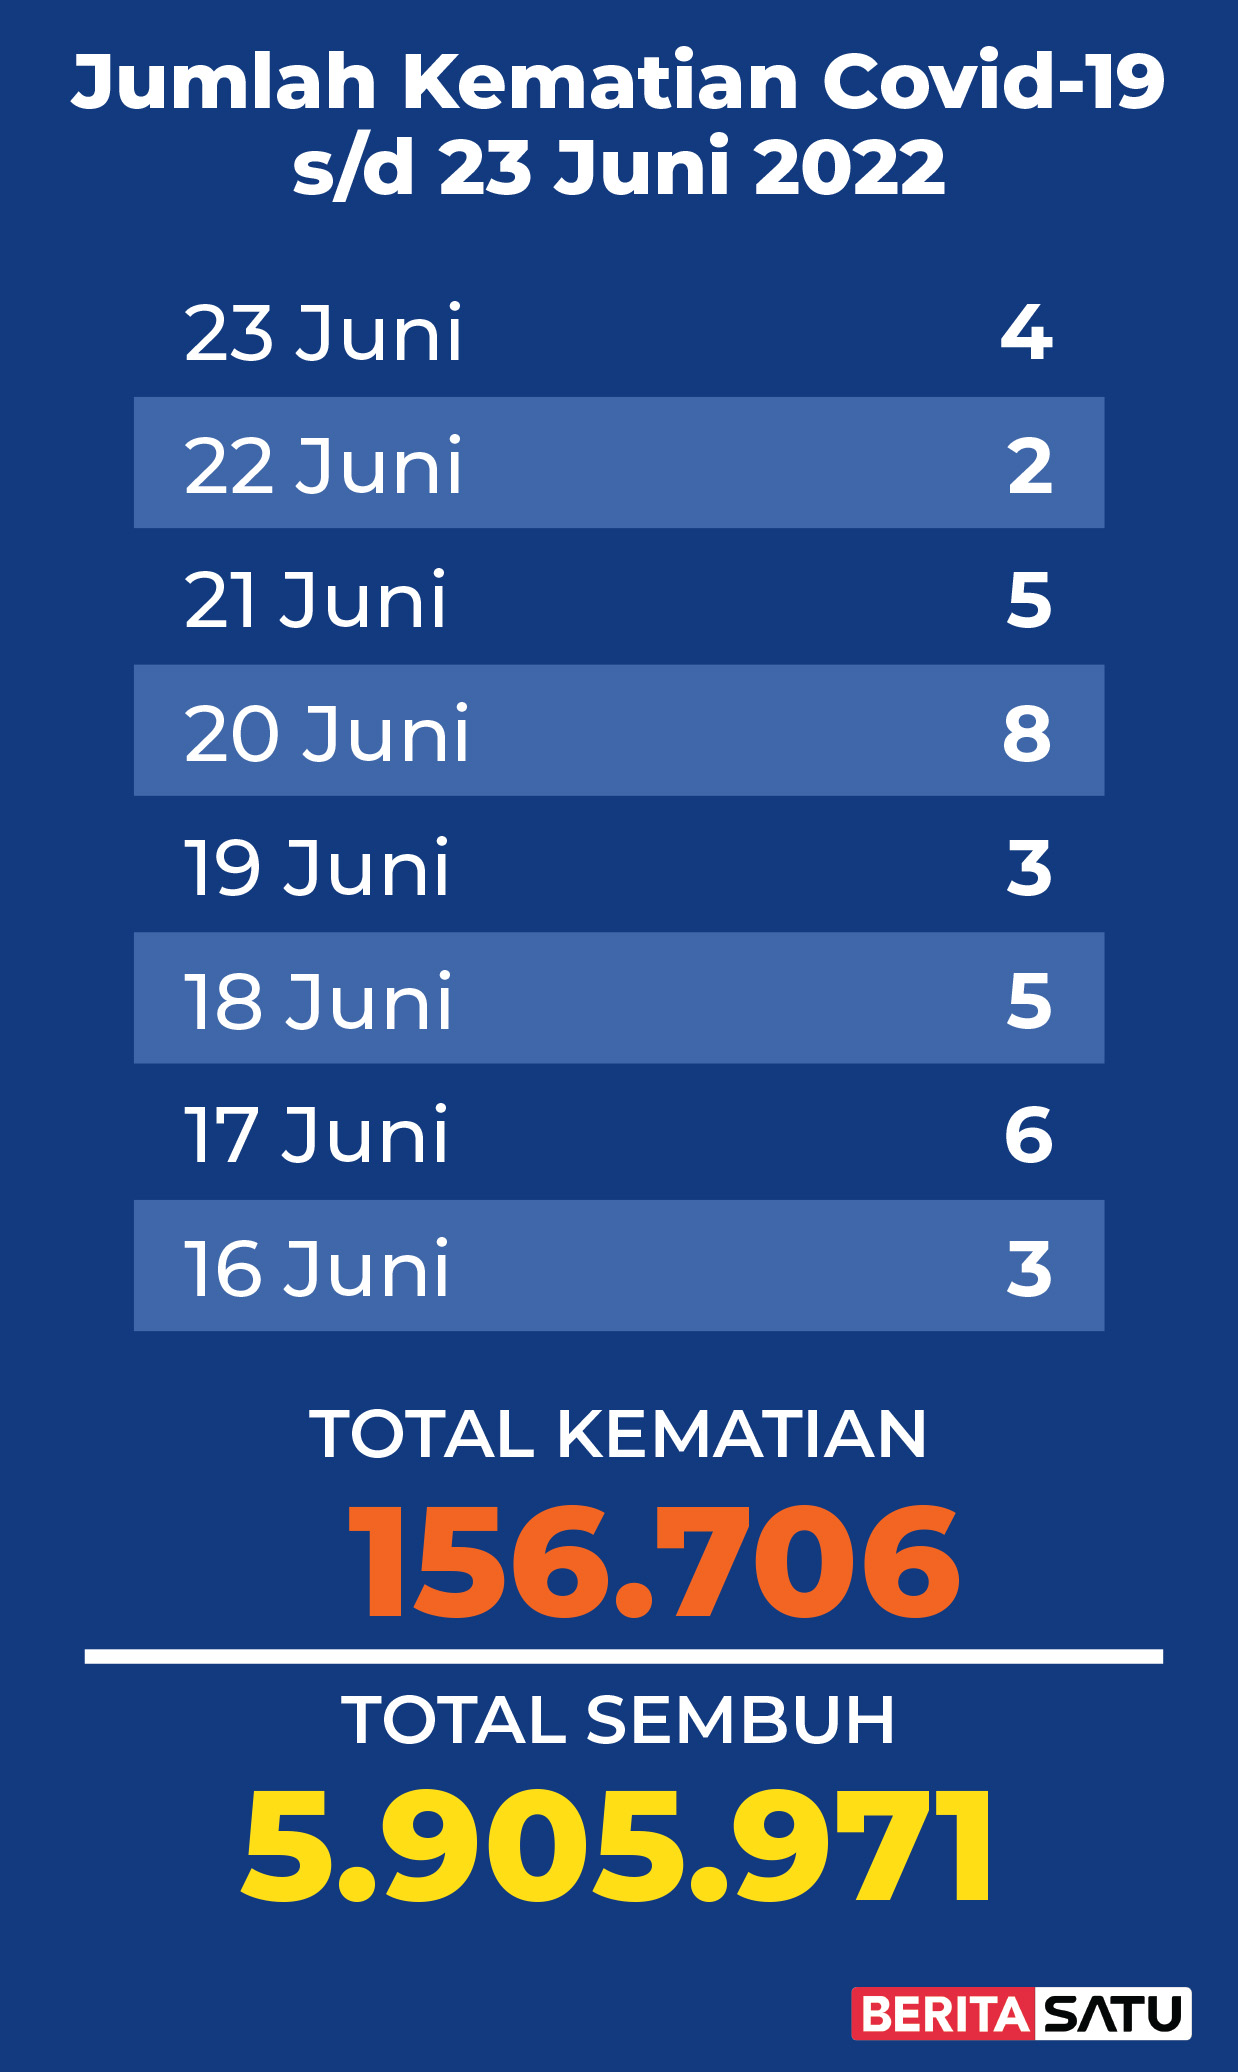 Data Kematian Covid-19 di Indonesia sampai 23 Juni 2022